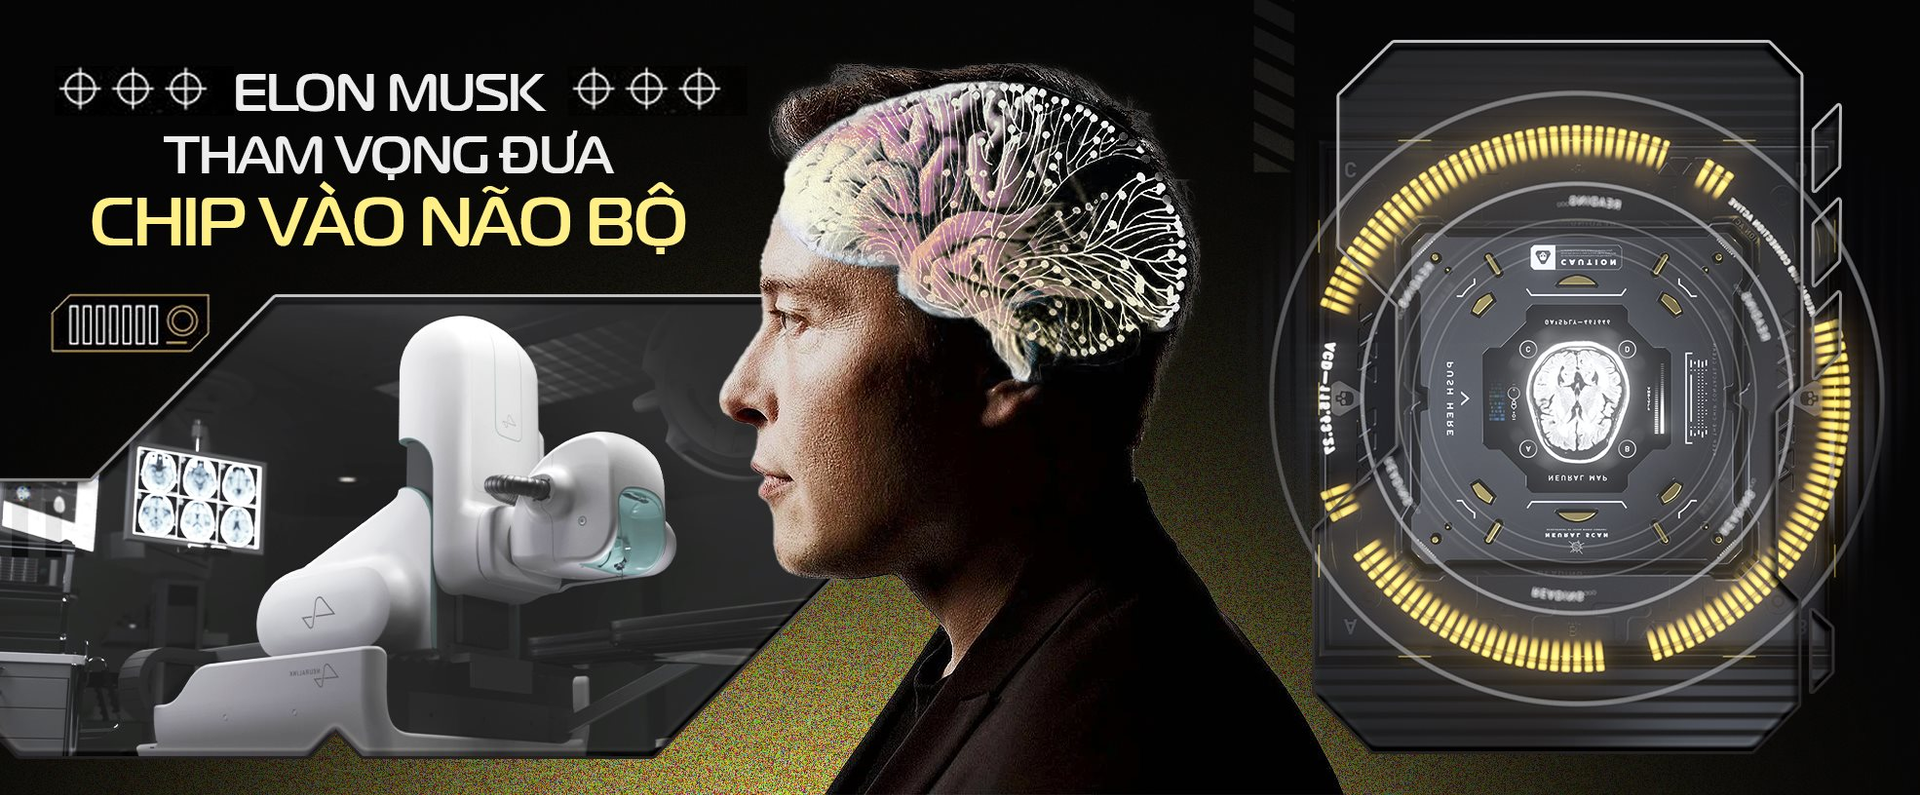 Giấc mơ cấy chip vào não người điên rồ của Elon Musk: Tự chế tạo robot phẫu thuật, sẽ thực hiện hơn 22.000 cuộc giải phẫu vào năm 2030, chi phí mỗi ca 10.000 USD - Ảnh 2.